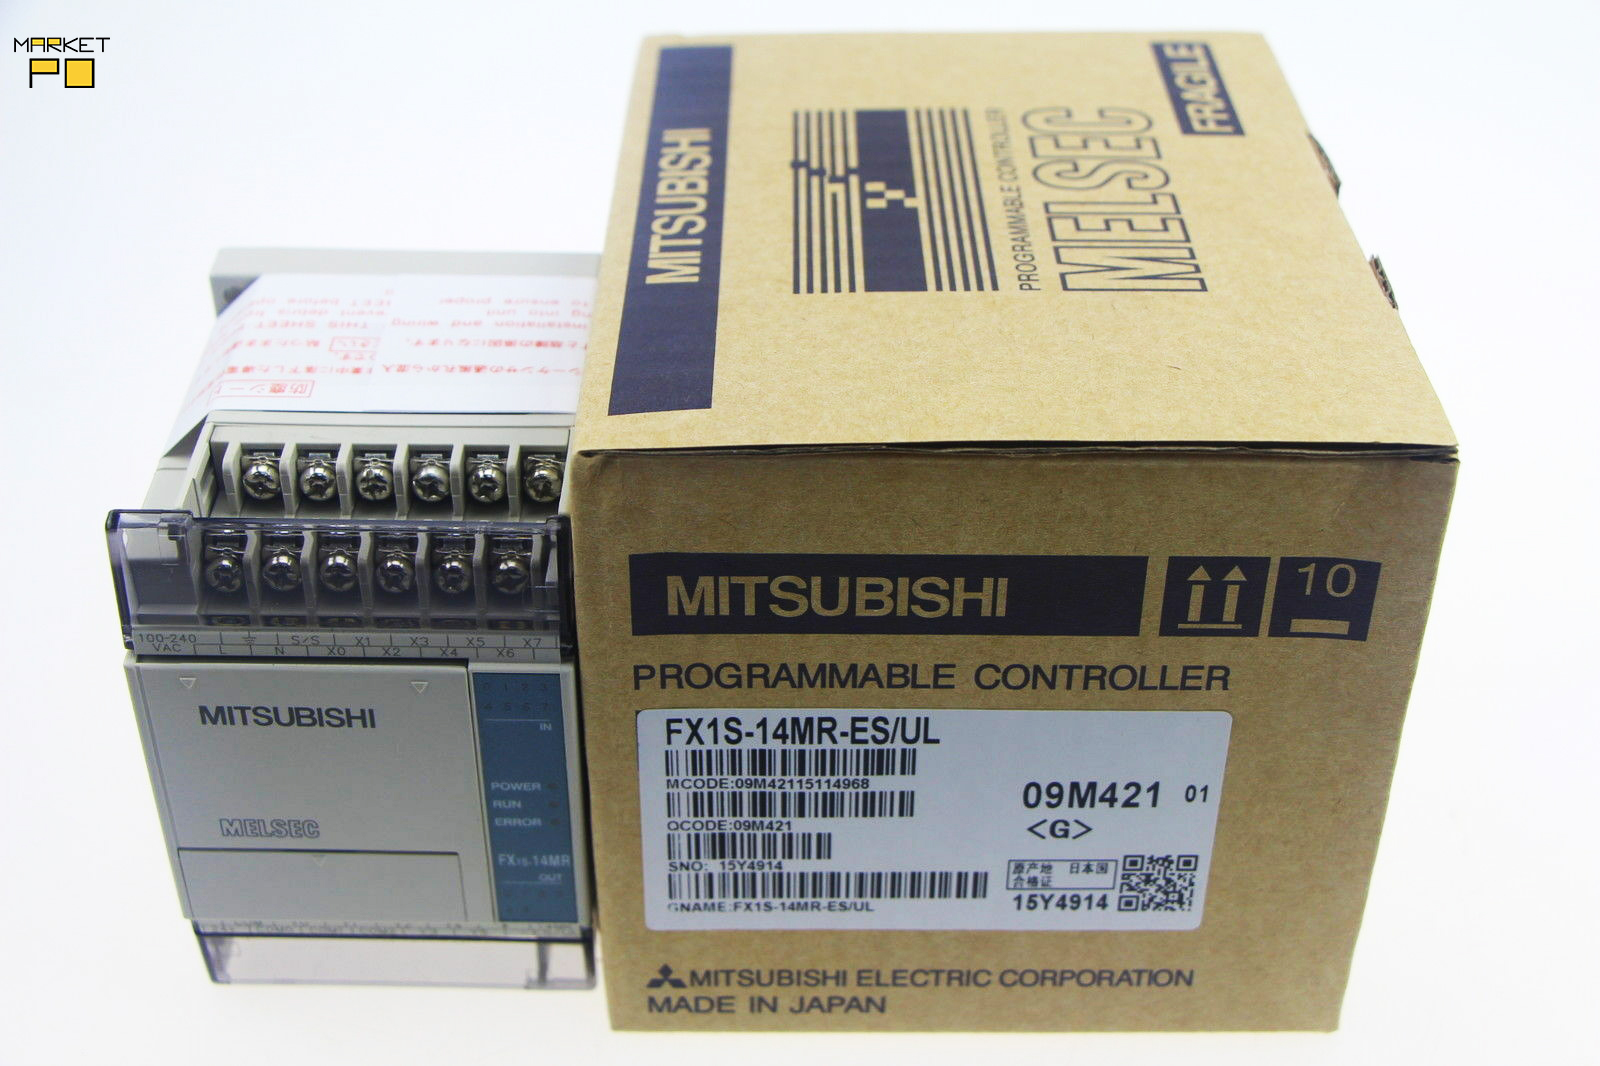 ПЛК Mitsubishi FX1S-14MR-ES/UL